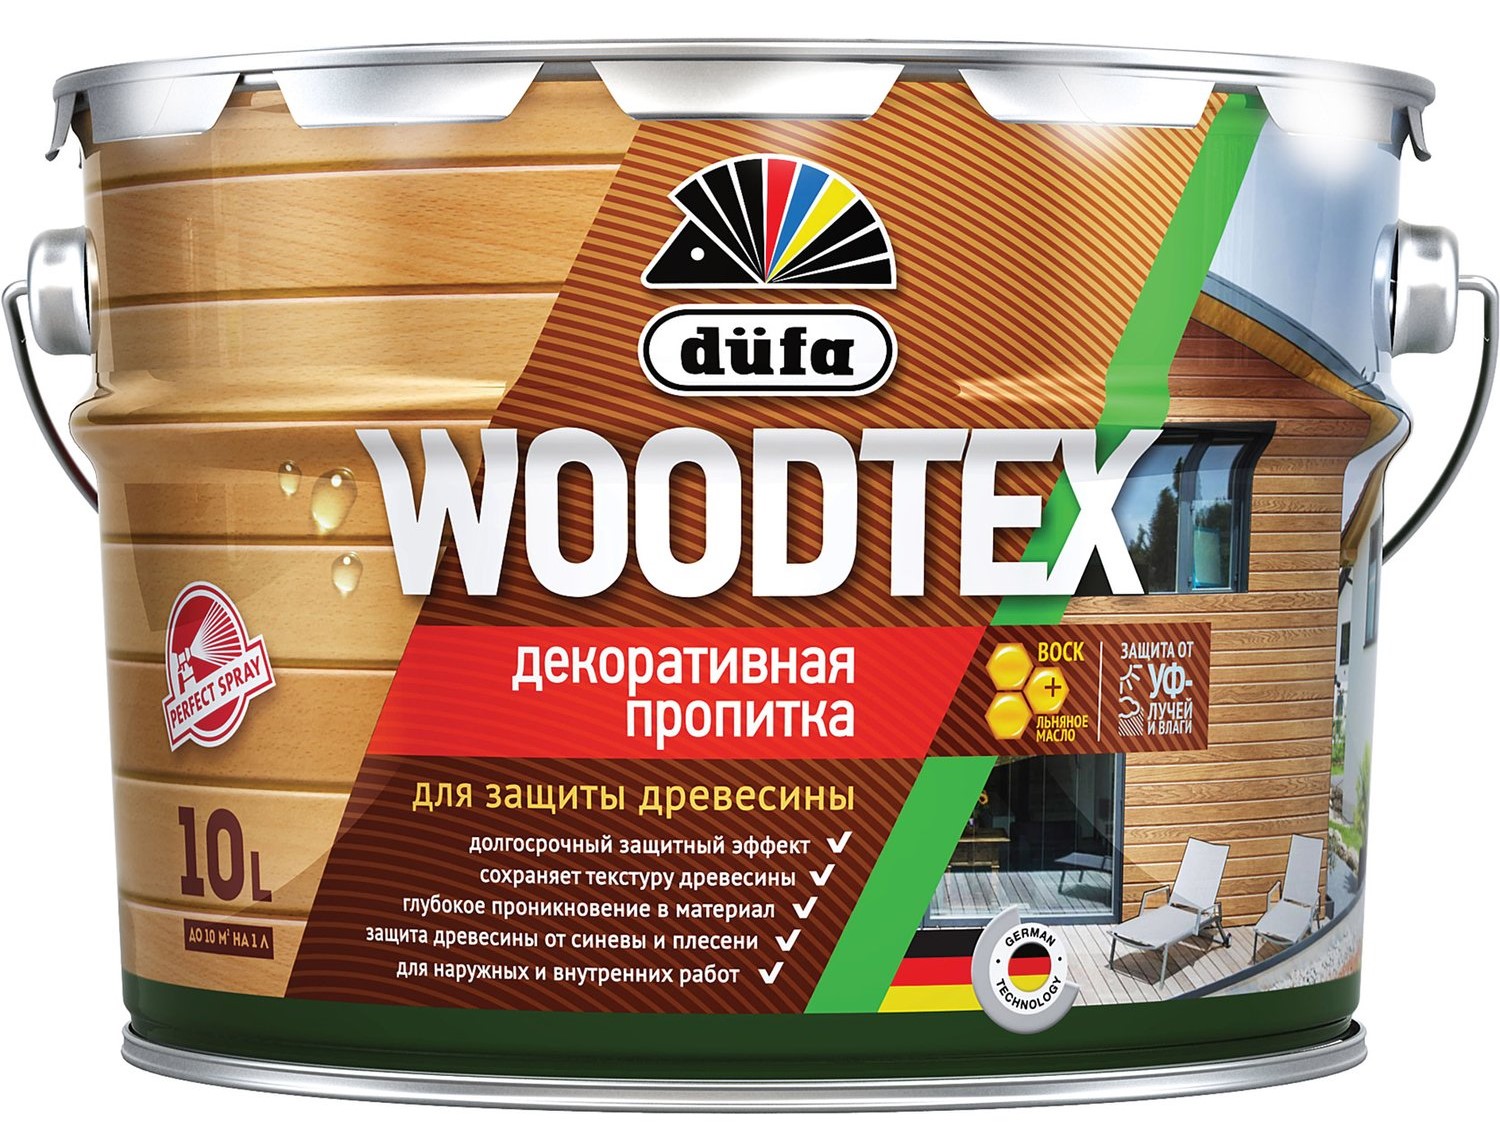 Пропитка деревозащитная декоративная Dufa Woodtex орех 3 л, цена .